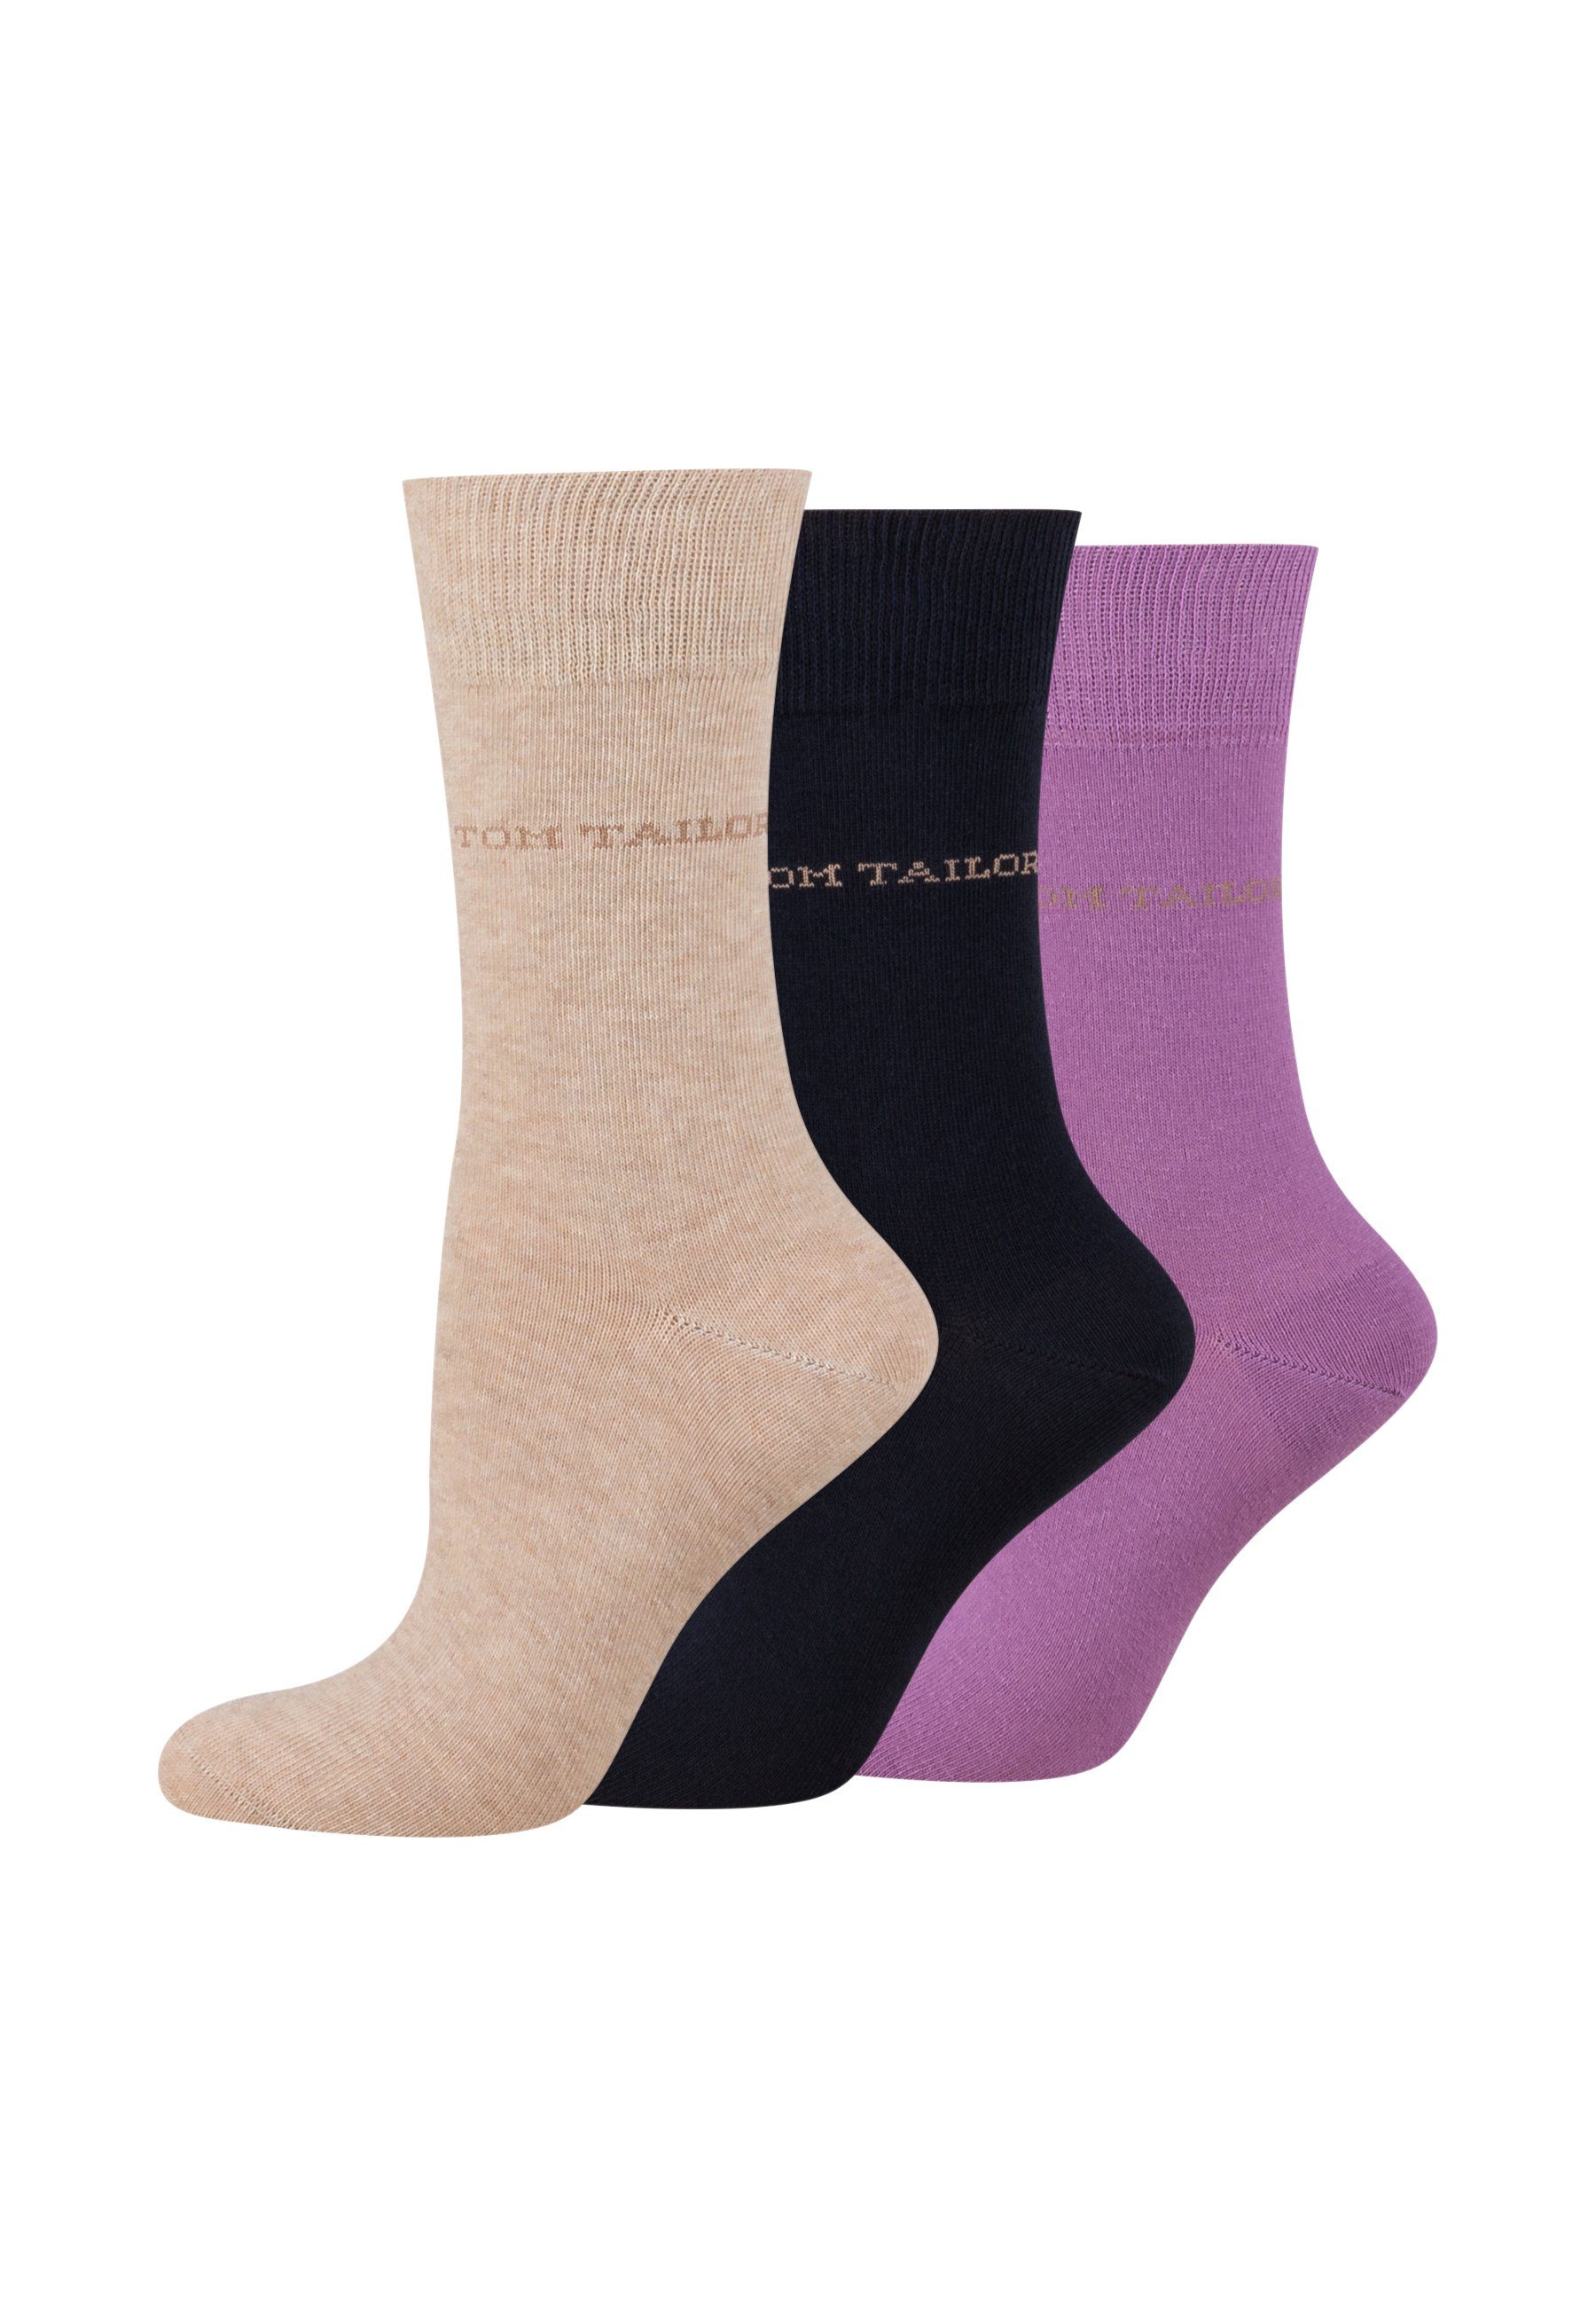 TOM TAILOR Socken 9609791038 TOM TAILOR Socken Damen – Baumwollsocken für Alltag und Freizeit beige